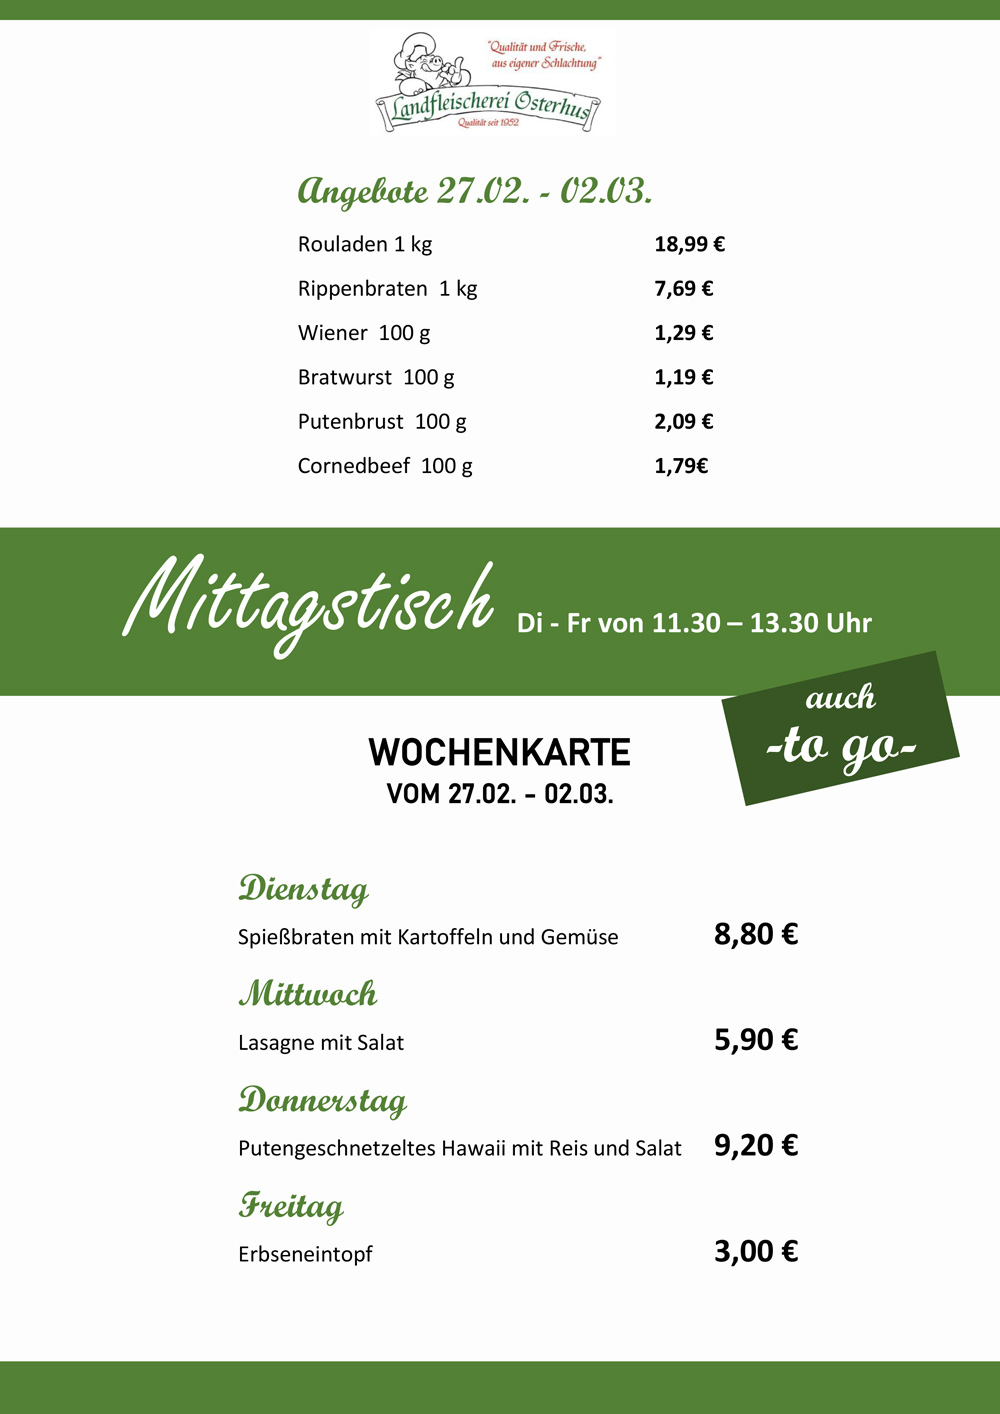 Landfleischerei Osterhus GmbH - Angebote & Mittagstisch